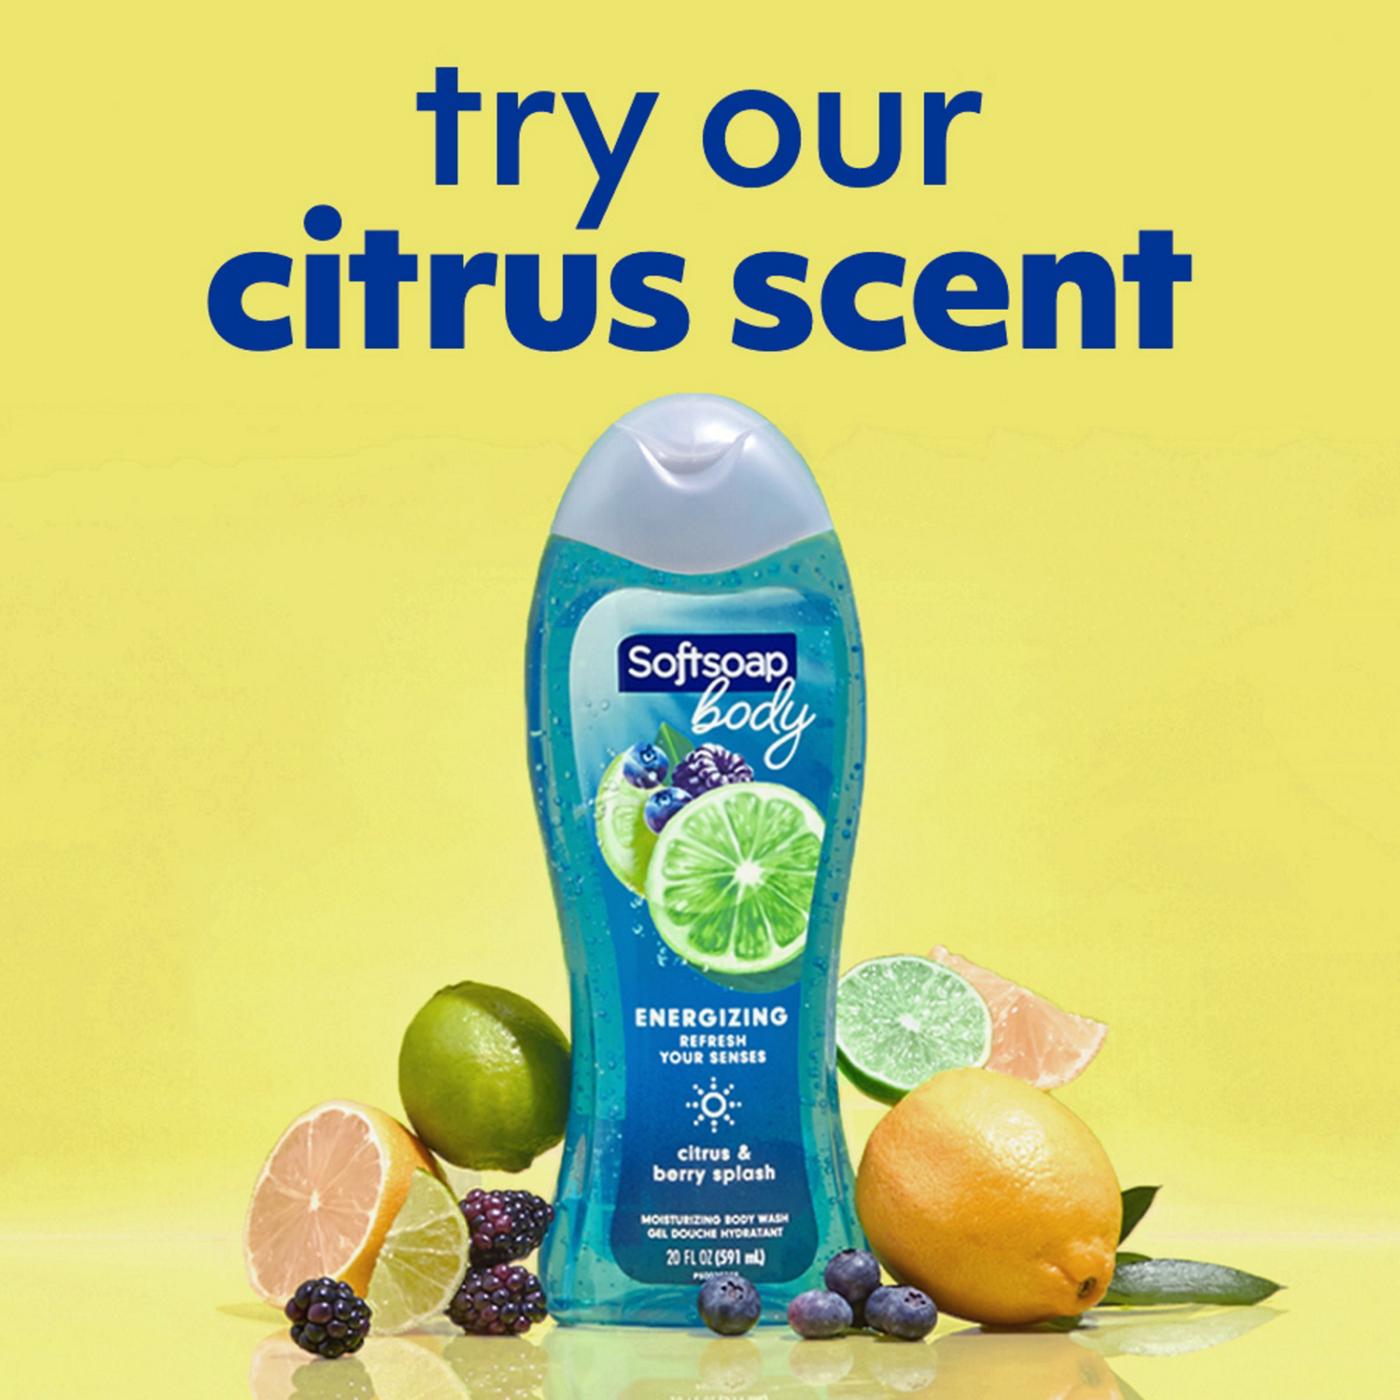 Softsoap Body Wash - Citrus & Berry Splash; image 6 of 9